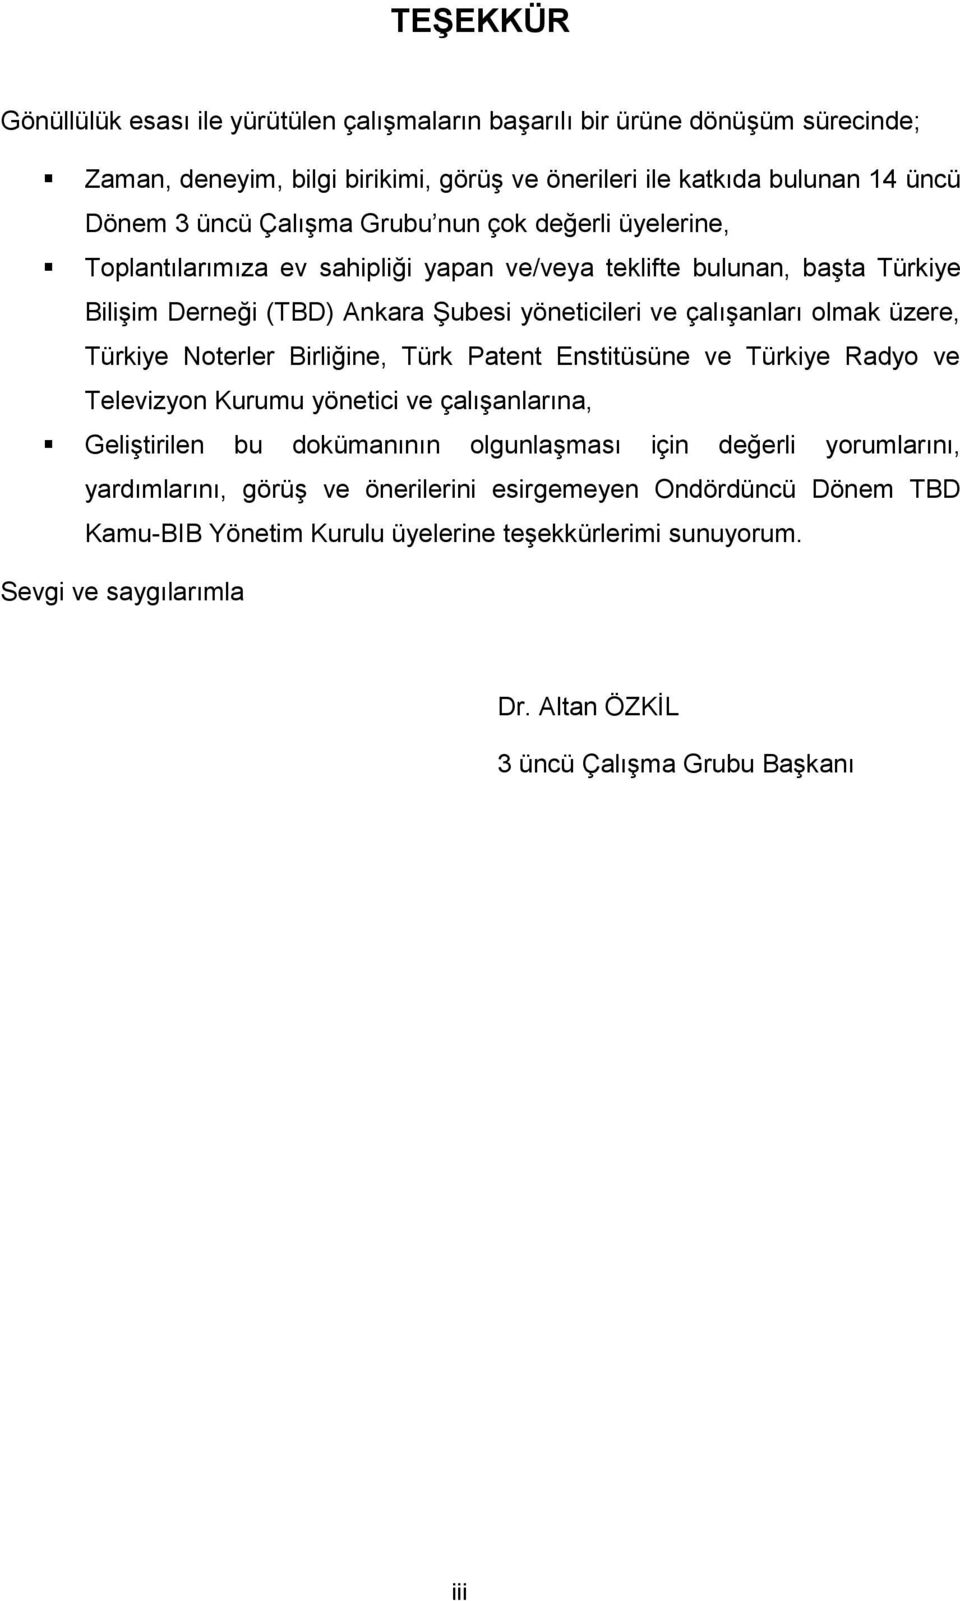 üzere, Türkiye Noterler Birliğine, Türk Patent Enstitüsüne ve Türkiye Radyo ve Televizyon Kurumu yönetici ve çalıģanlarına, GeliĢtirilen bu dokümanının olgunlaģması için değerli